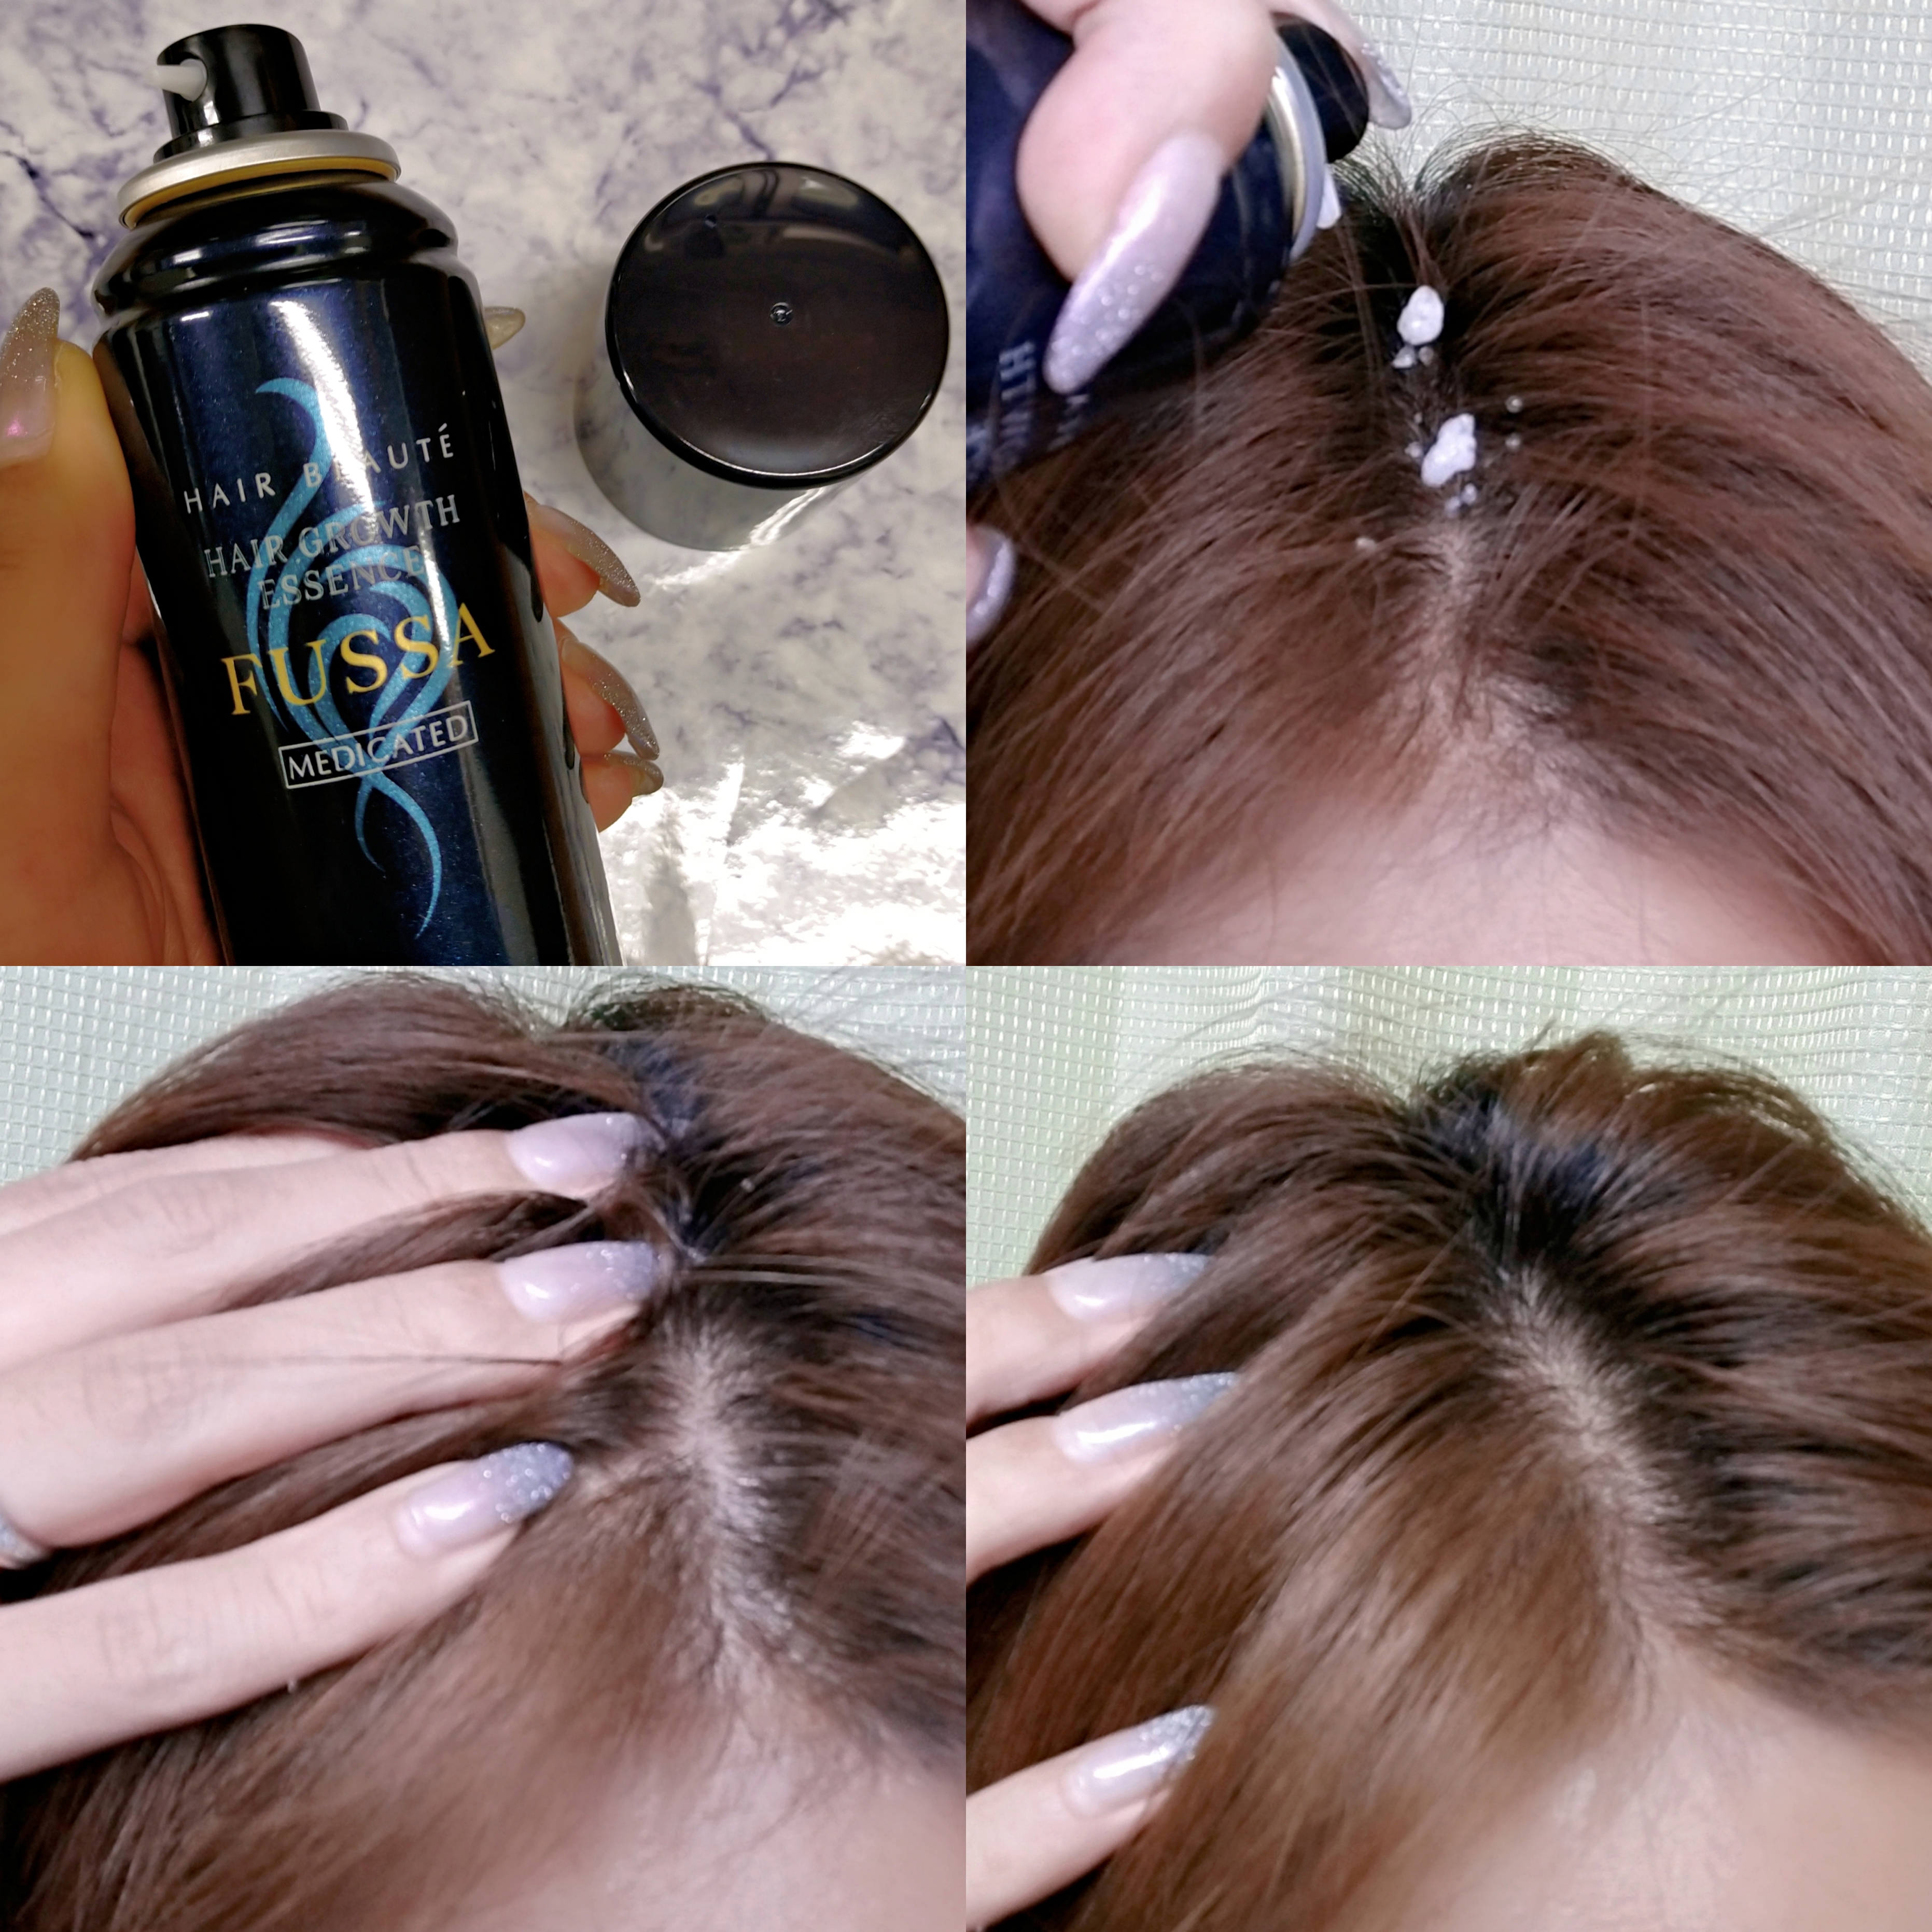 HAIR BEAUTE(ヘアボーテ) 薬用育毛エッセンス FUSSAの良い点・メリットに関するみこさんの口コミ画像2